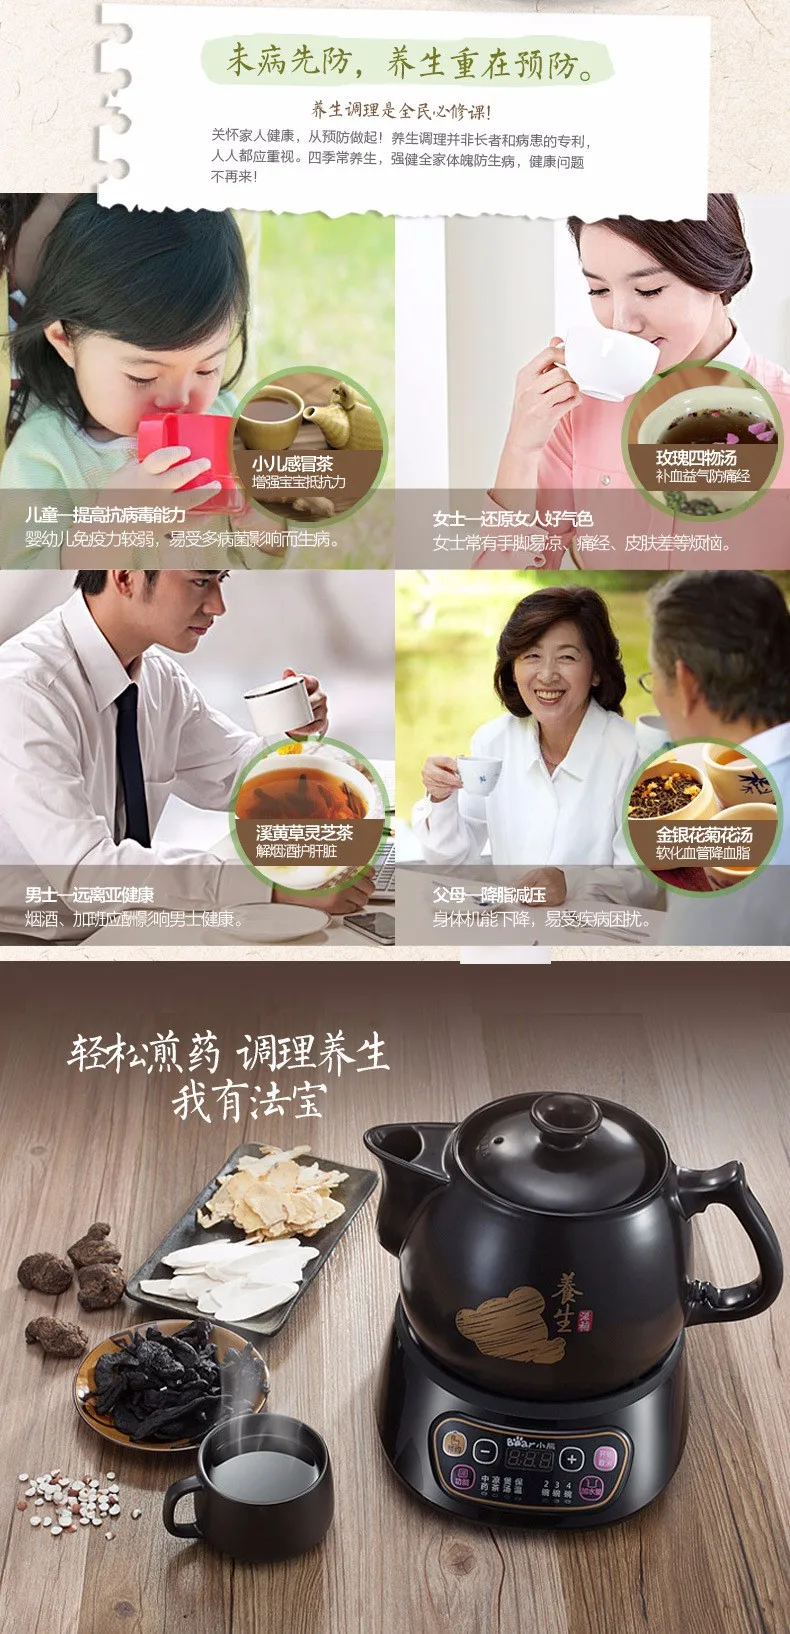 Автоматический 3л чайник Decocting прибор для керамического здоровья горшок китайской медицины чайник электрический